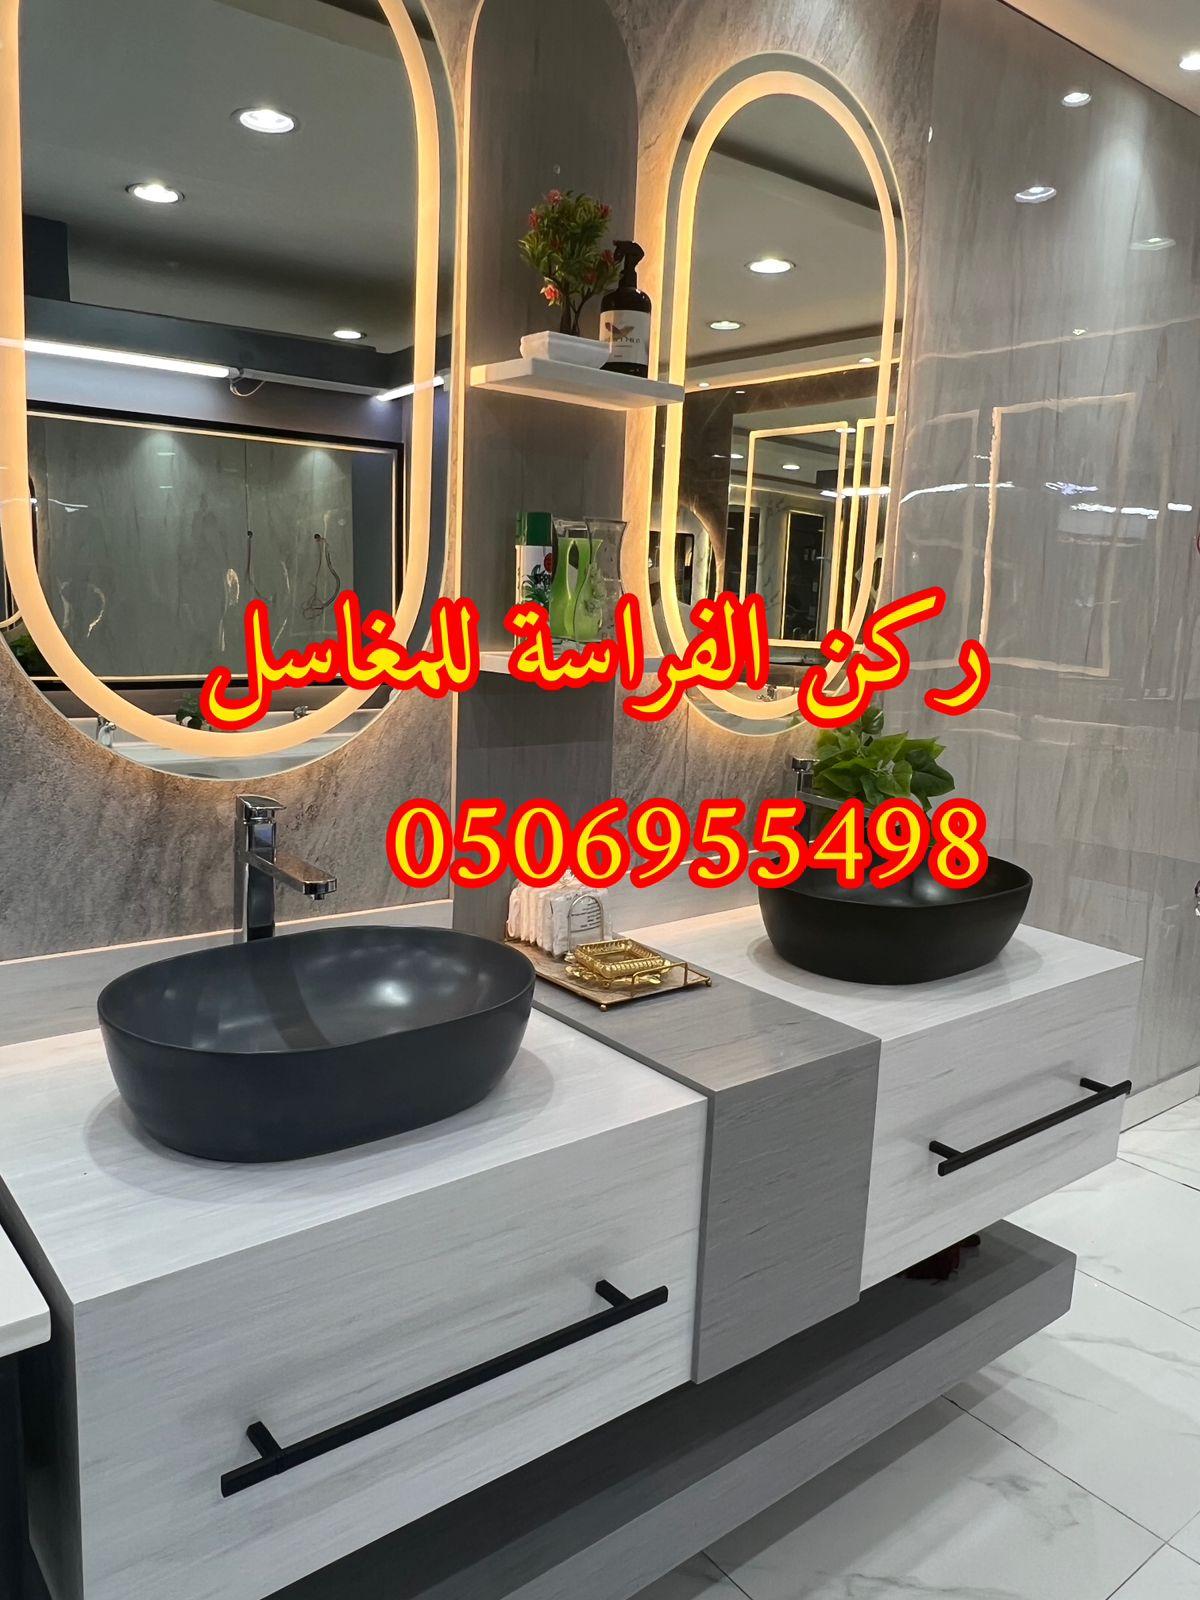 احواض مغاسل رخام في الرياض,0506955498 212359278